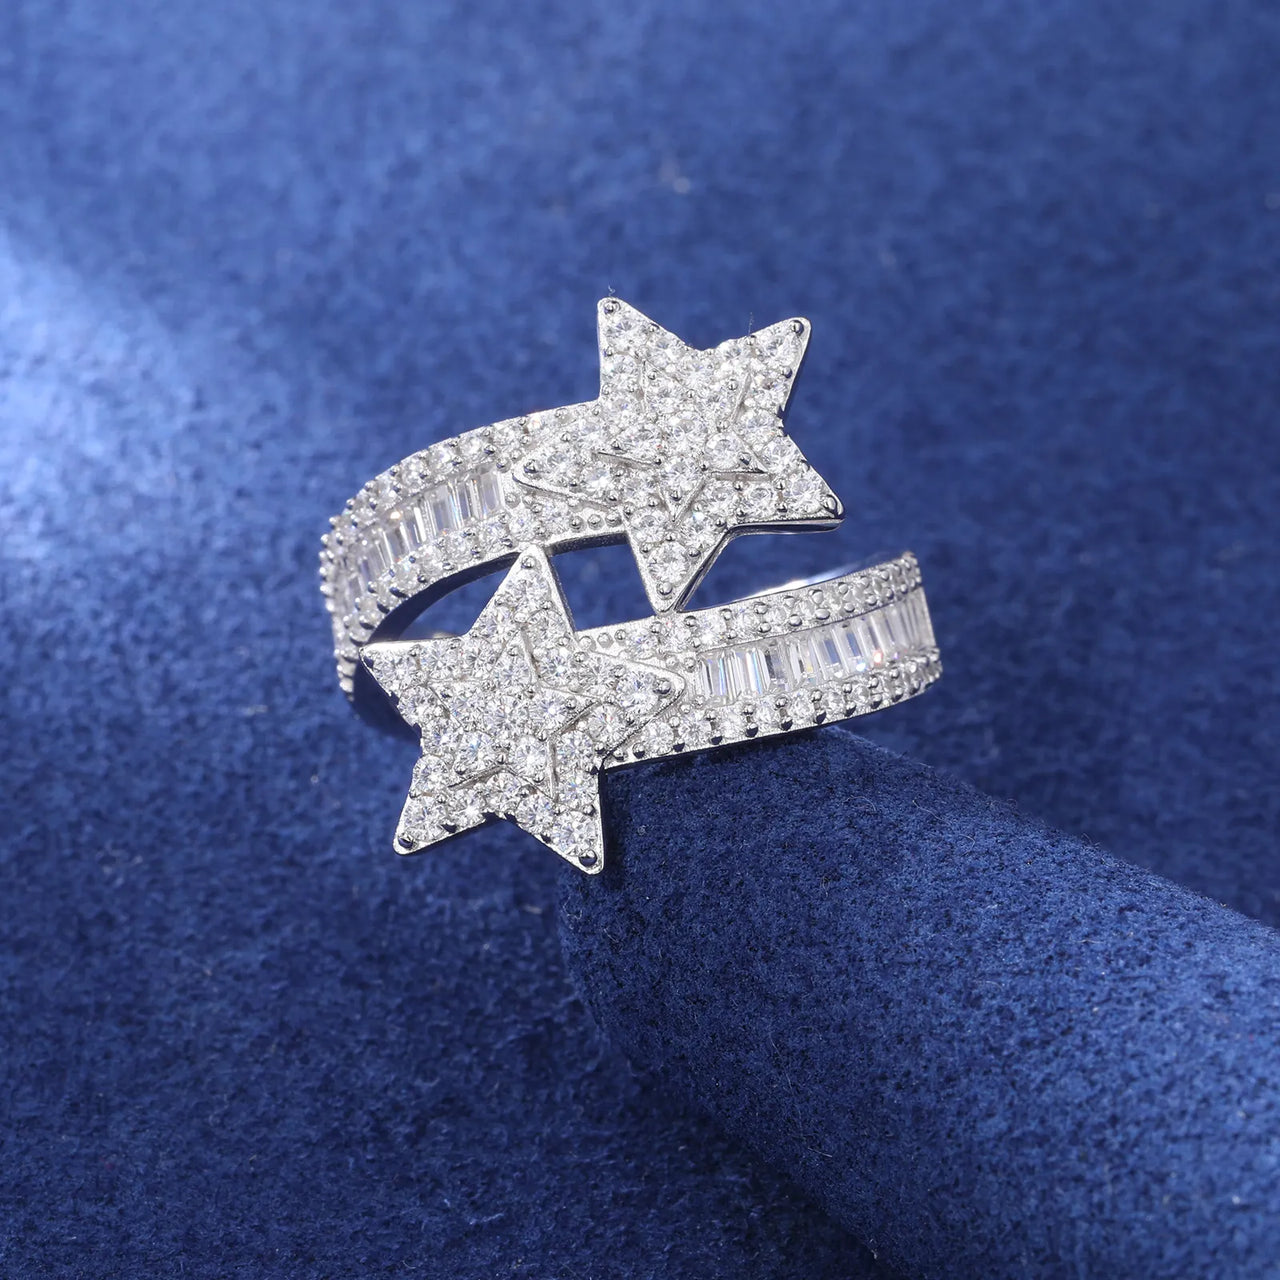 BAGUETTE MOISSANITE DIAMOND STAR RING IN STERLING SILVER